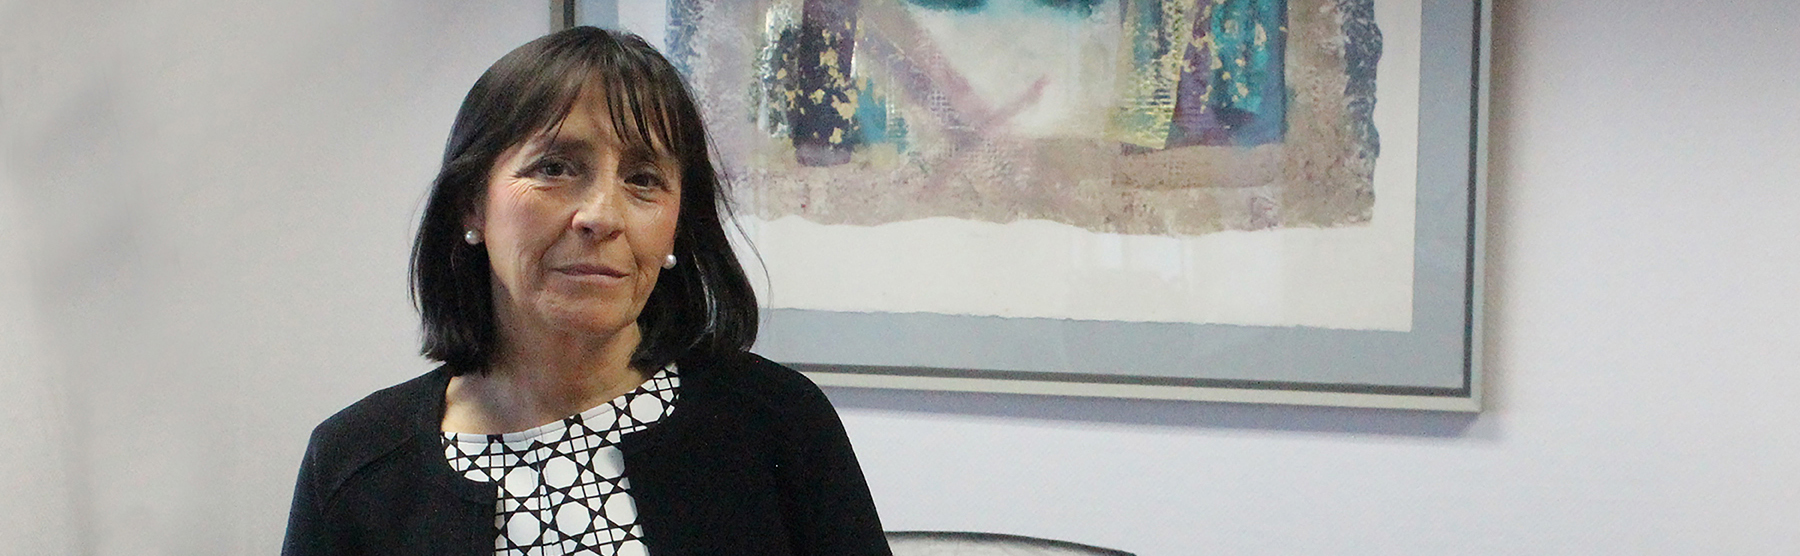 El Consejo de Administración de SEPI propone a Rosario Martínez Manzanedo como presidenta de Hispasat